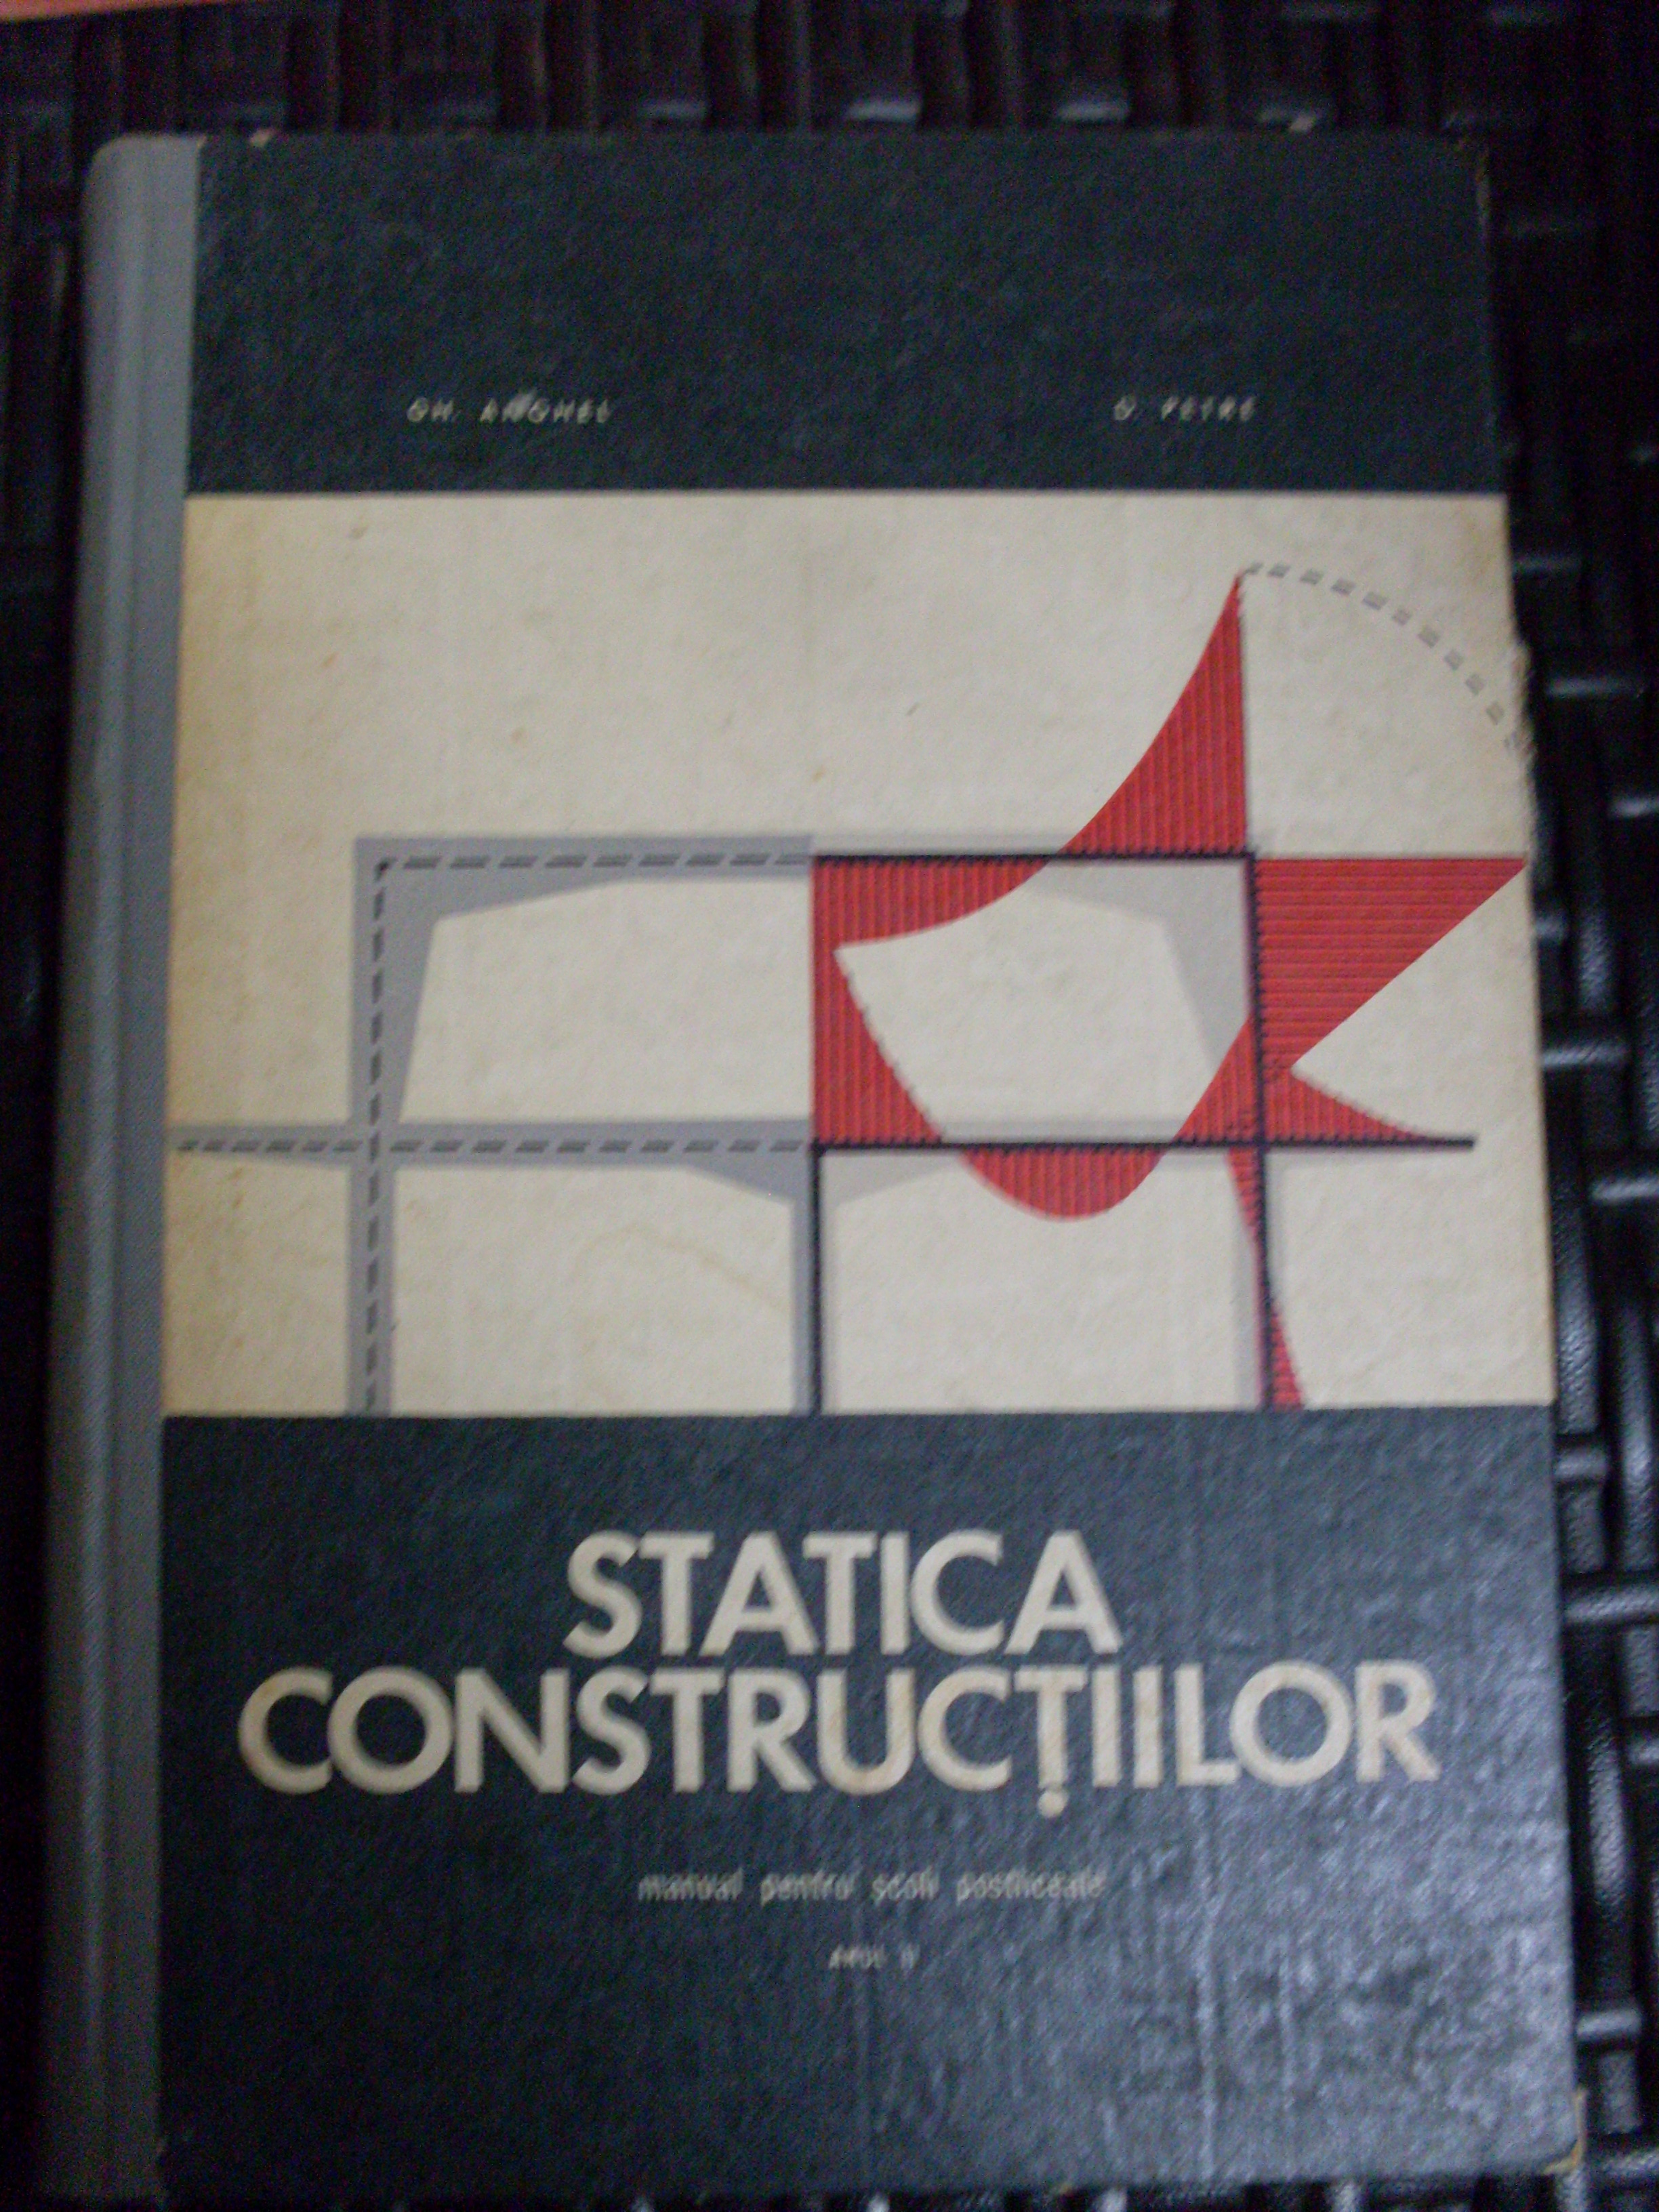 statica constructiilor                                                                               gh. anghel, d. petre                                                                                